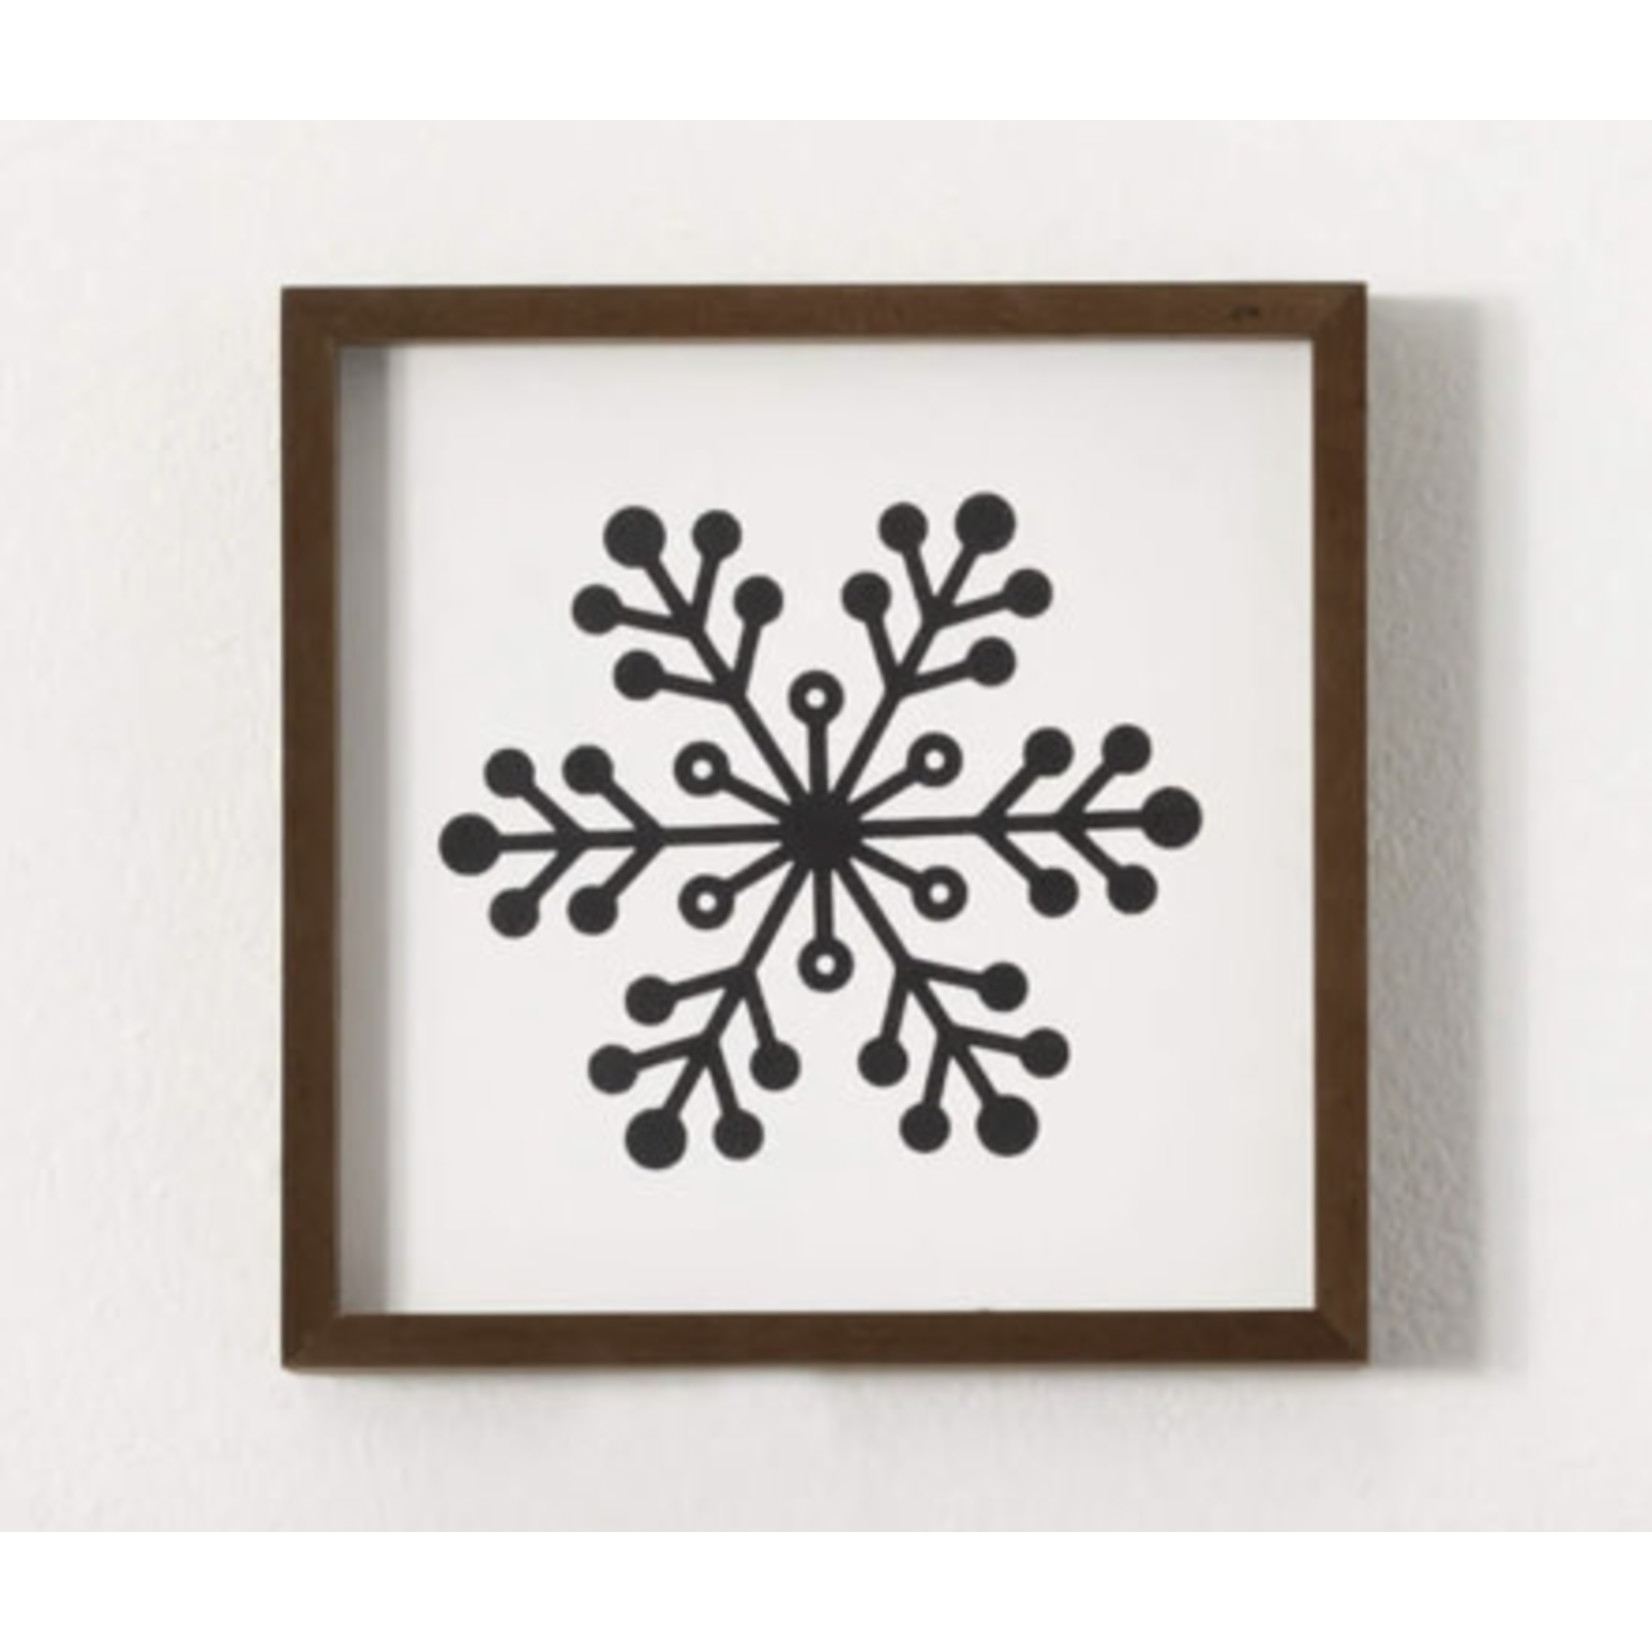 Snowflake Wall Decor, Black & White